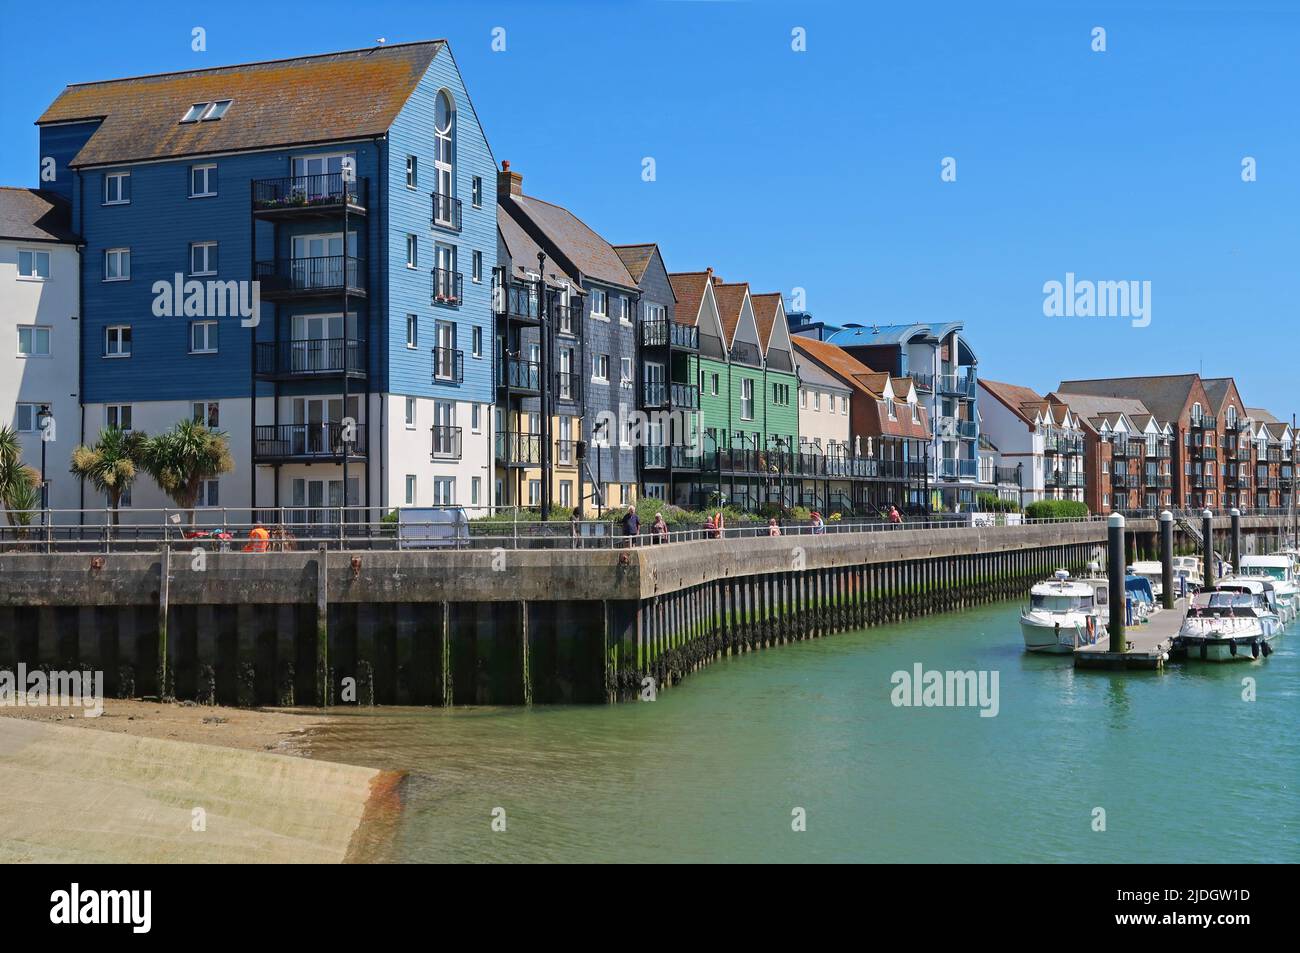 Littlehampton, West Sussex, Royaume-Uni. Récemment développé des logements en bord de mer sur la rive est de la rivière Arun. Montre le ponton et le sentier de promenade au bord de la rivière Banque D'Images